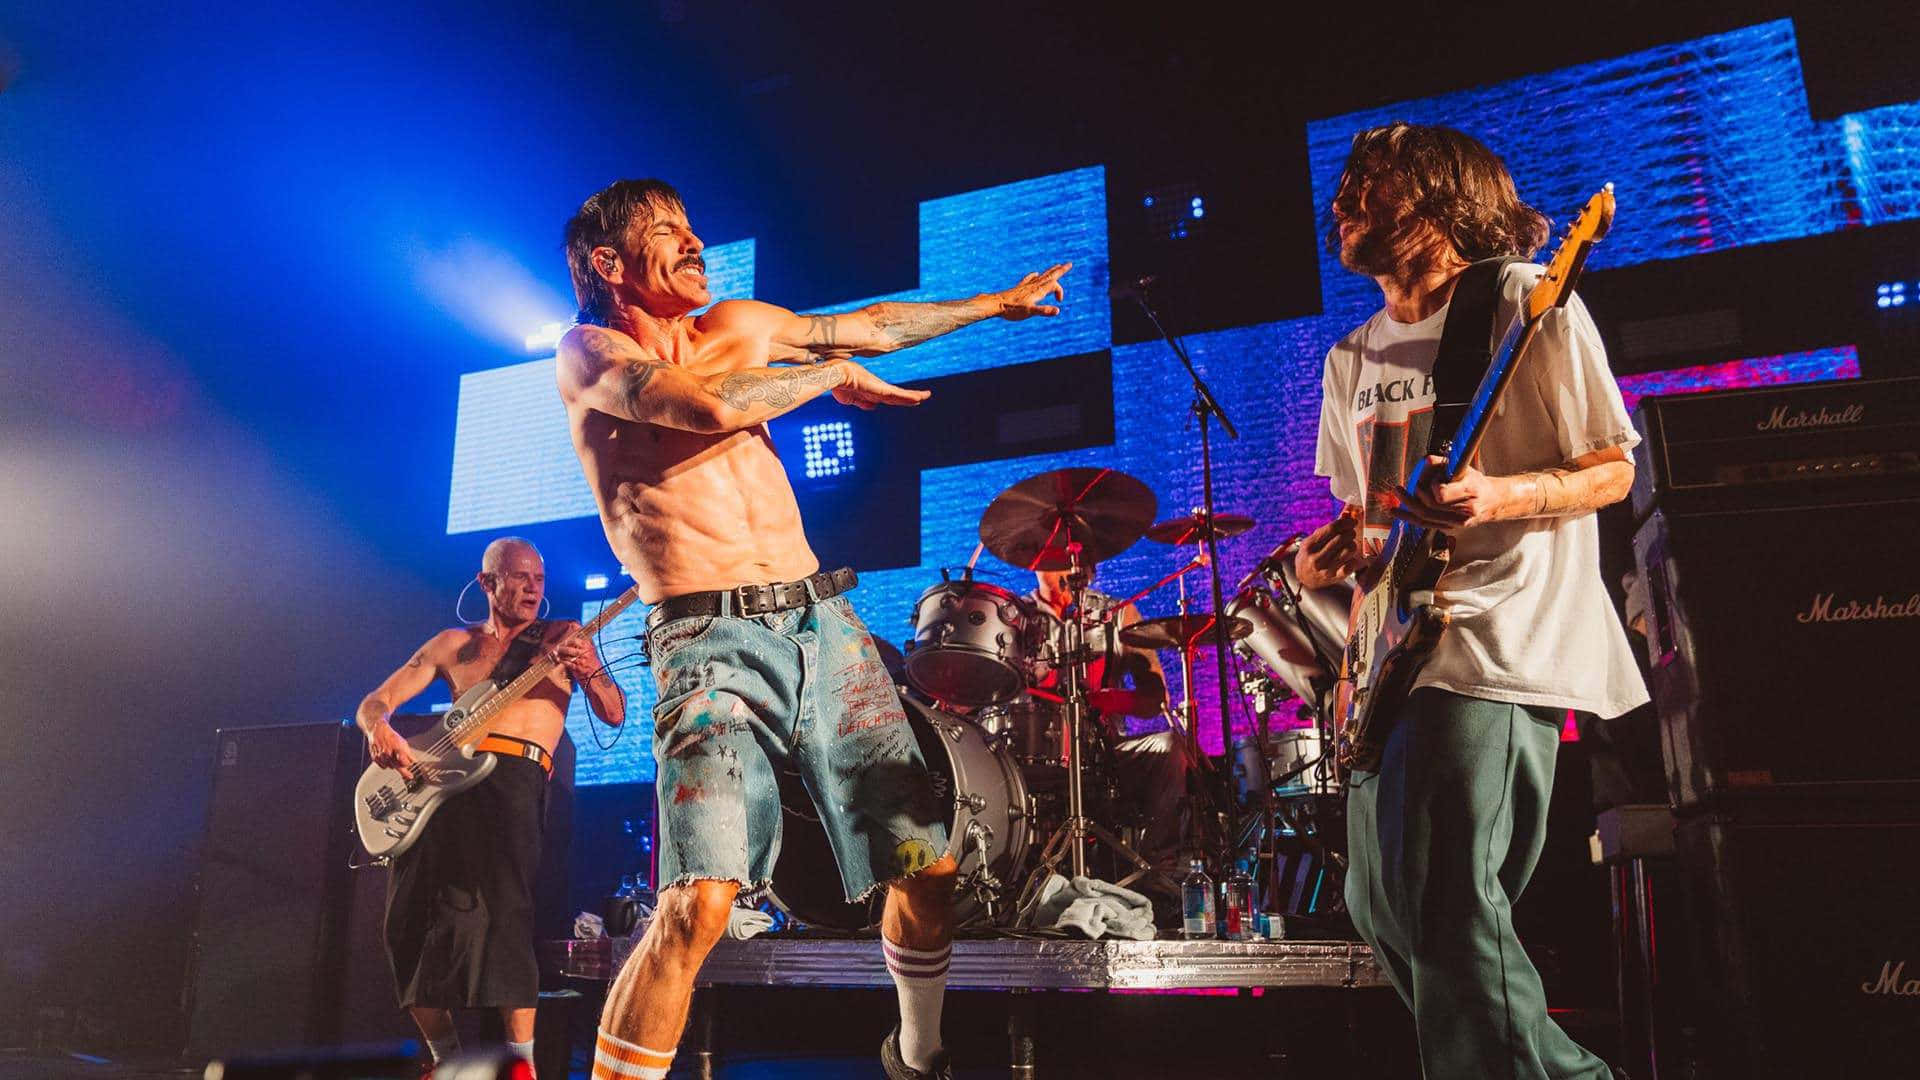 Diered Hot Chili Peppers Treten Gemeinsam Auf Der Bühne Auf. Wallpaper